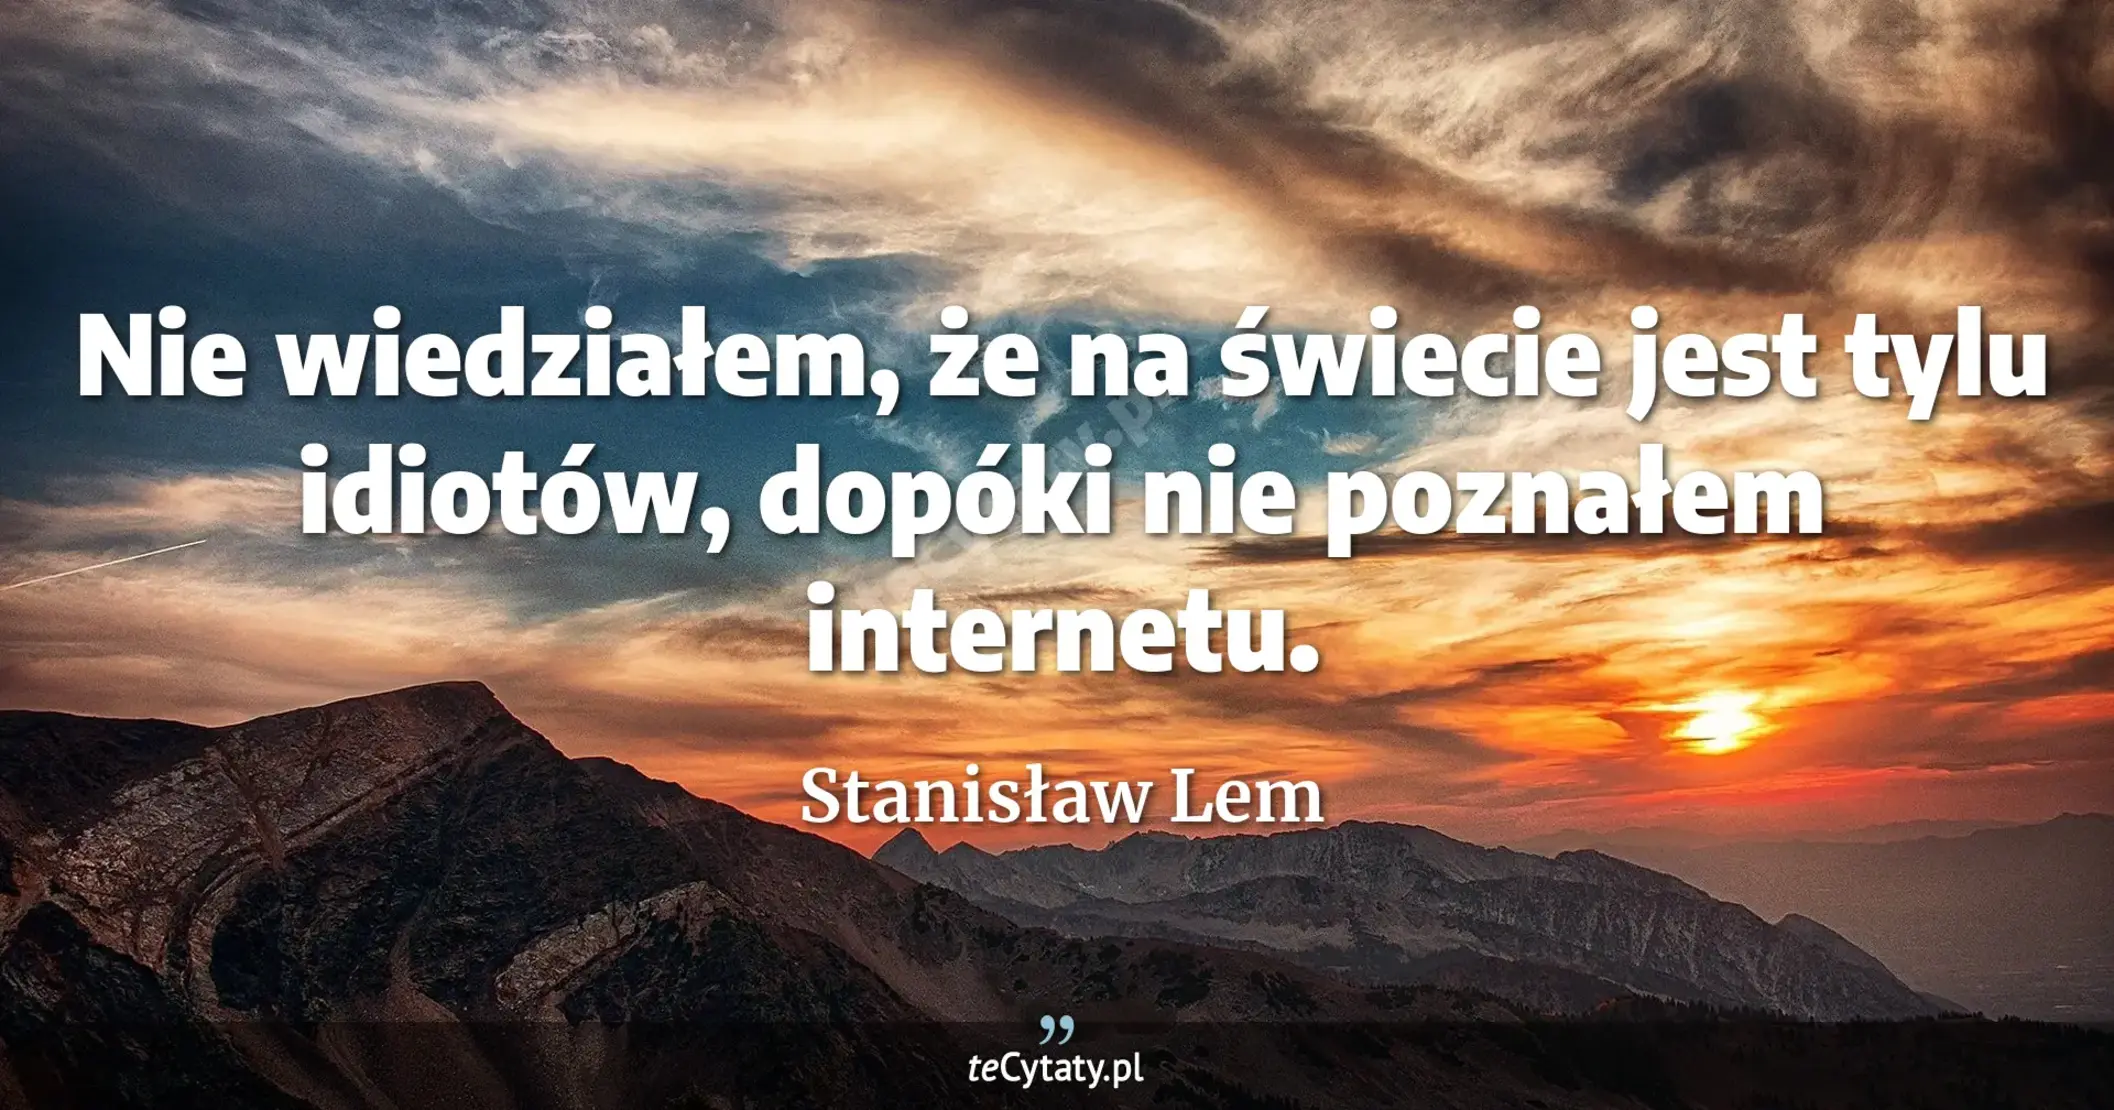 Nie wiedziałem, że na świecie jest tylu idiotów, dopóki nie poznałem internetu. - Stanisław Lem